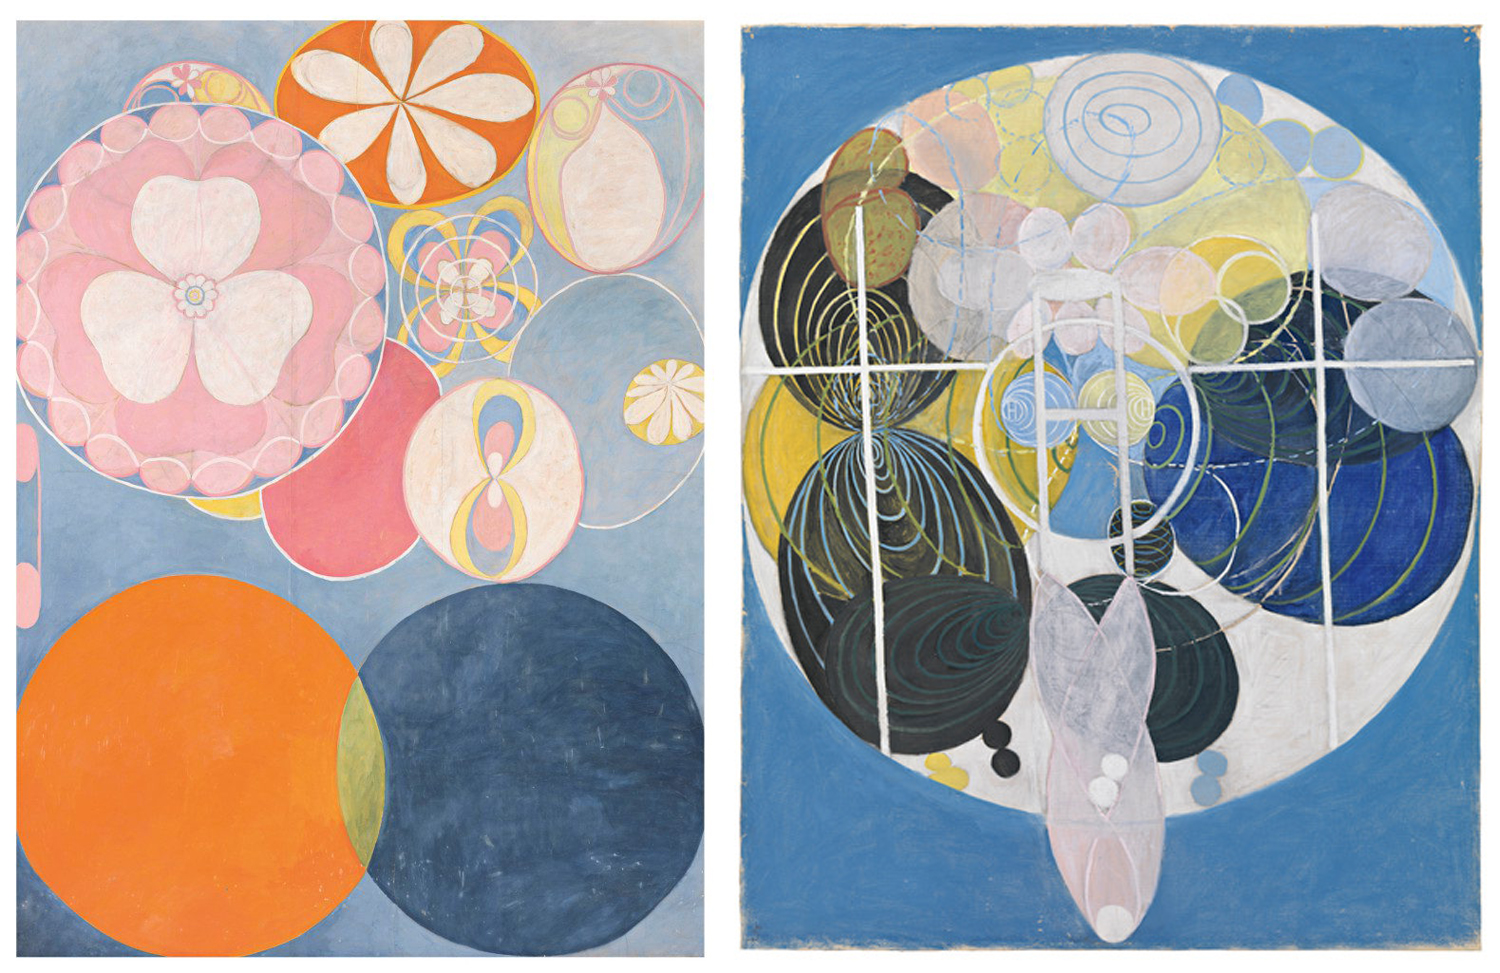 Två av Hilmas abstrakta tavlor. Den ena går i blått, rosa och orange den andra med blå nyanser och lite gult. Båda är målade med mönster i form av cirklar och blomblad.